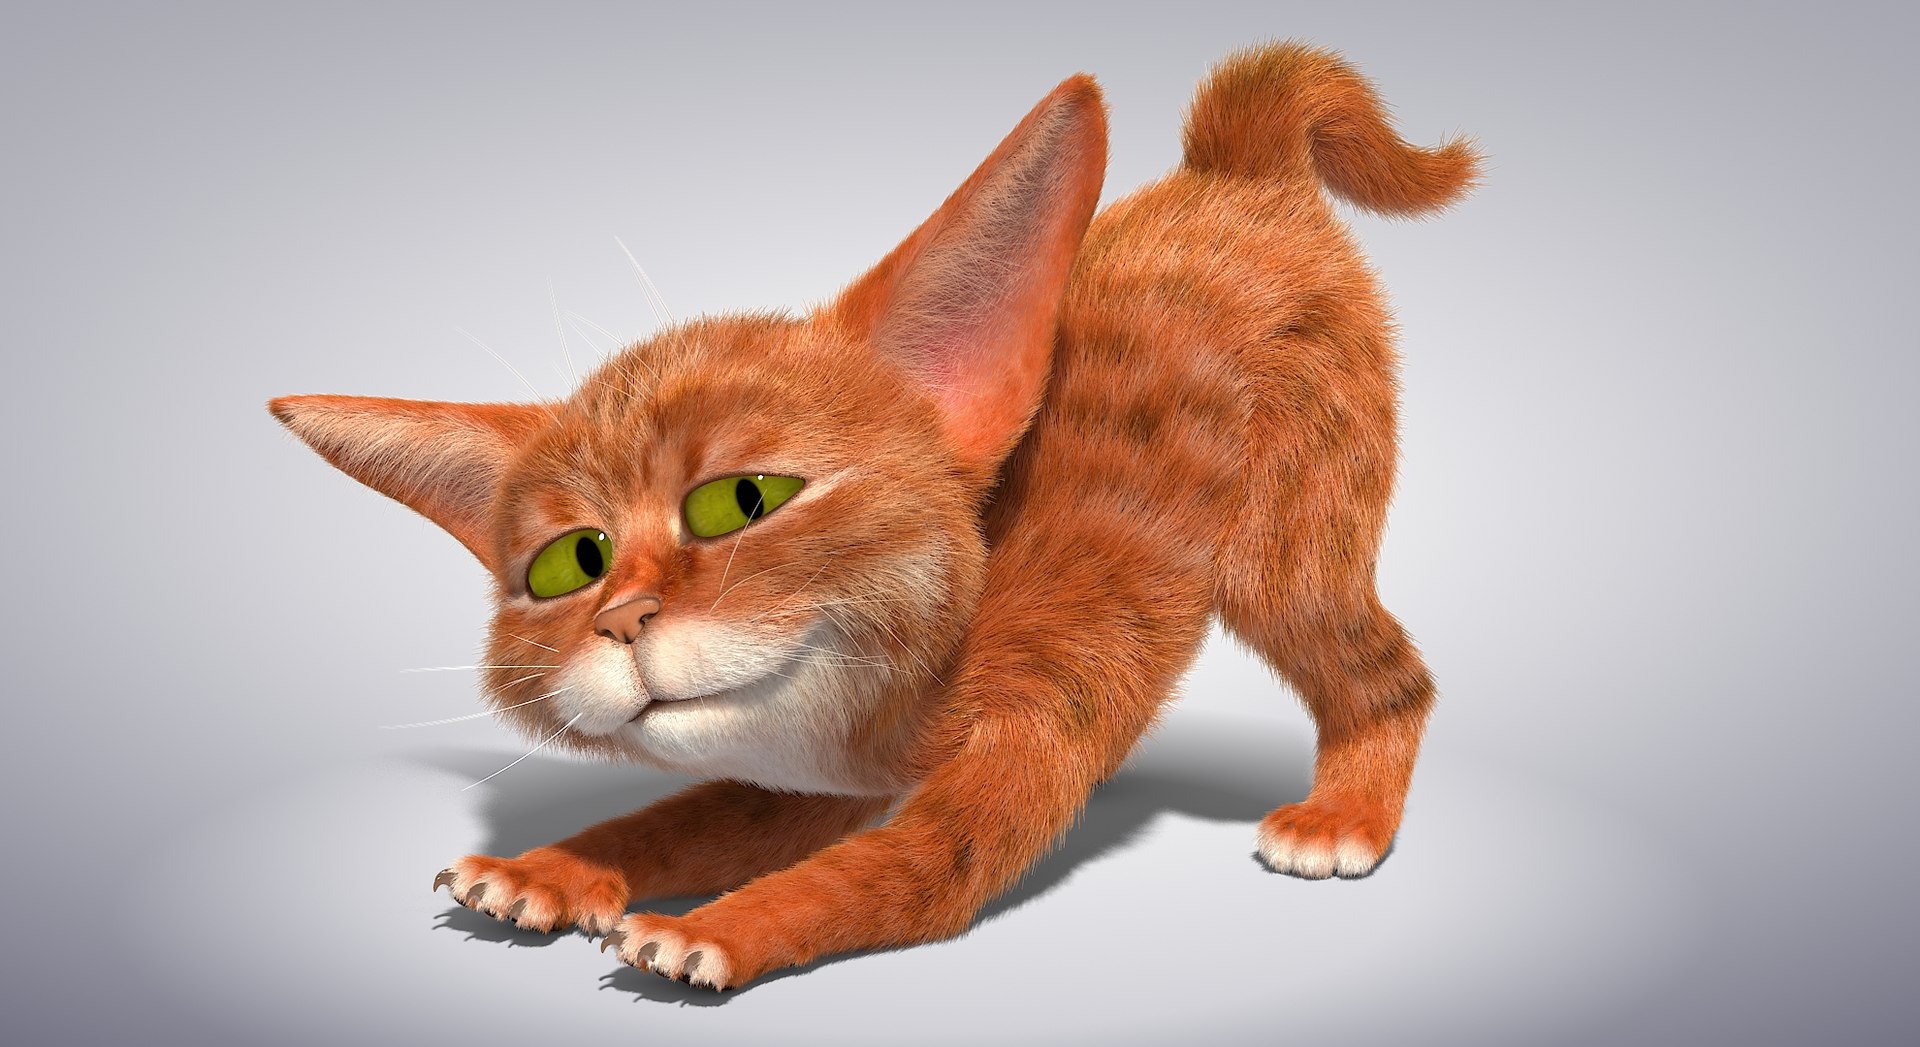 Cat character rig 3D model TurboSquid 1595375